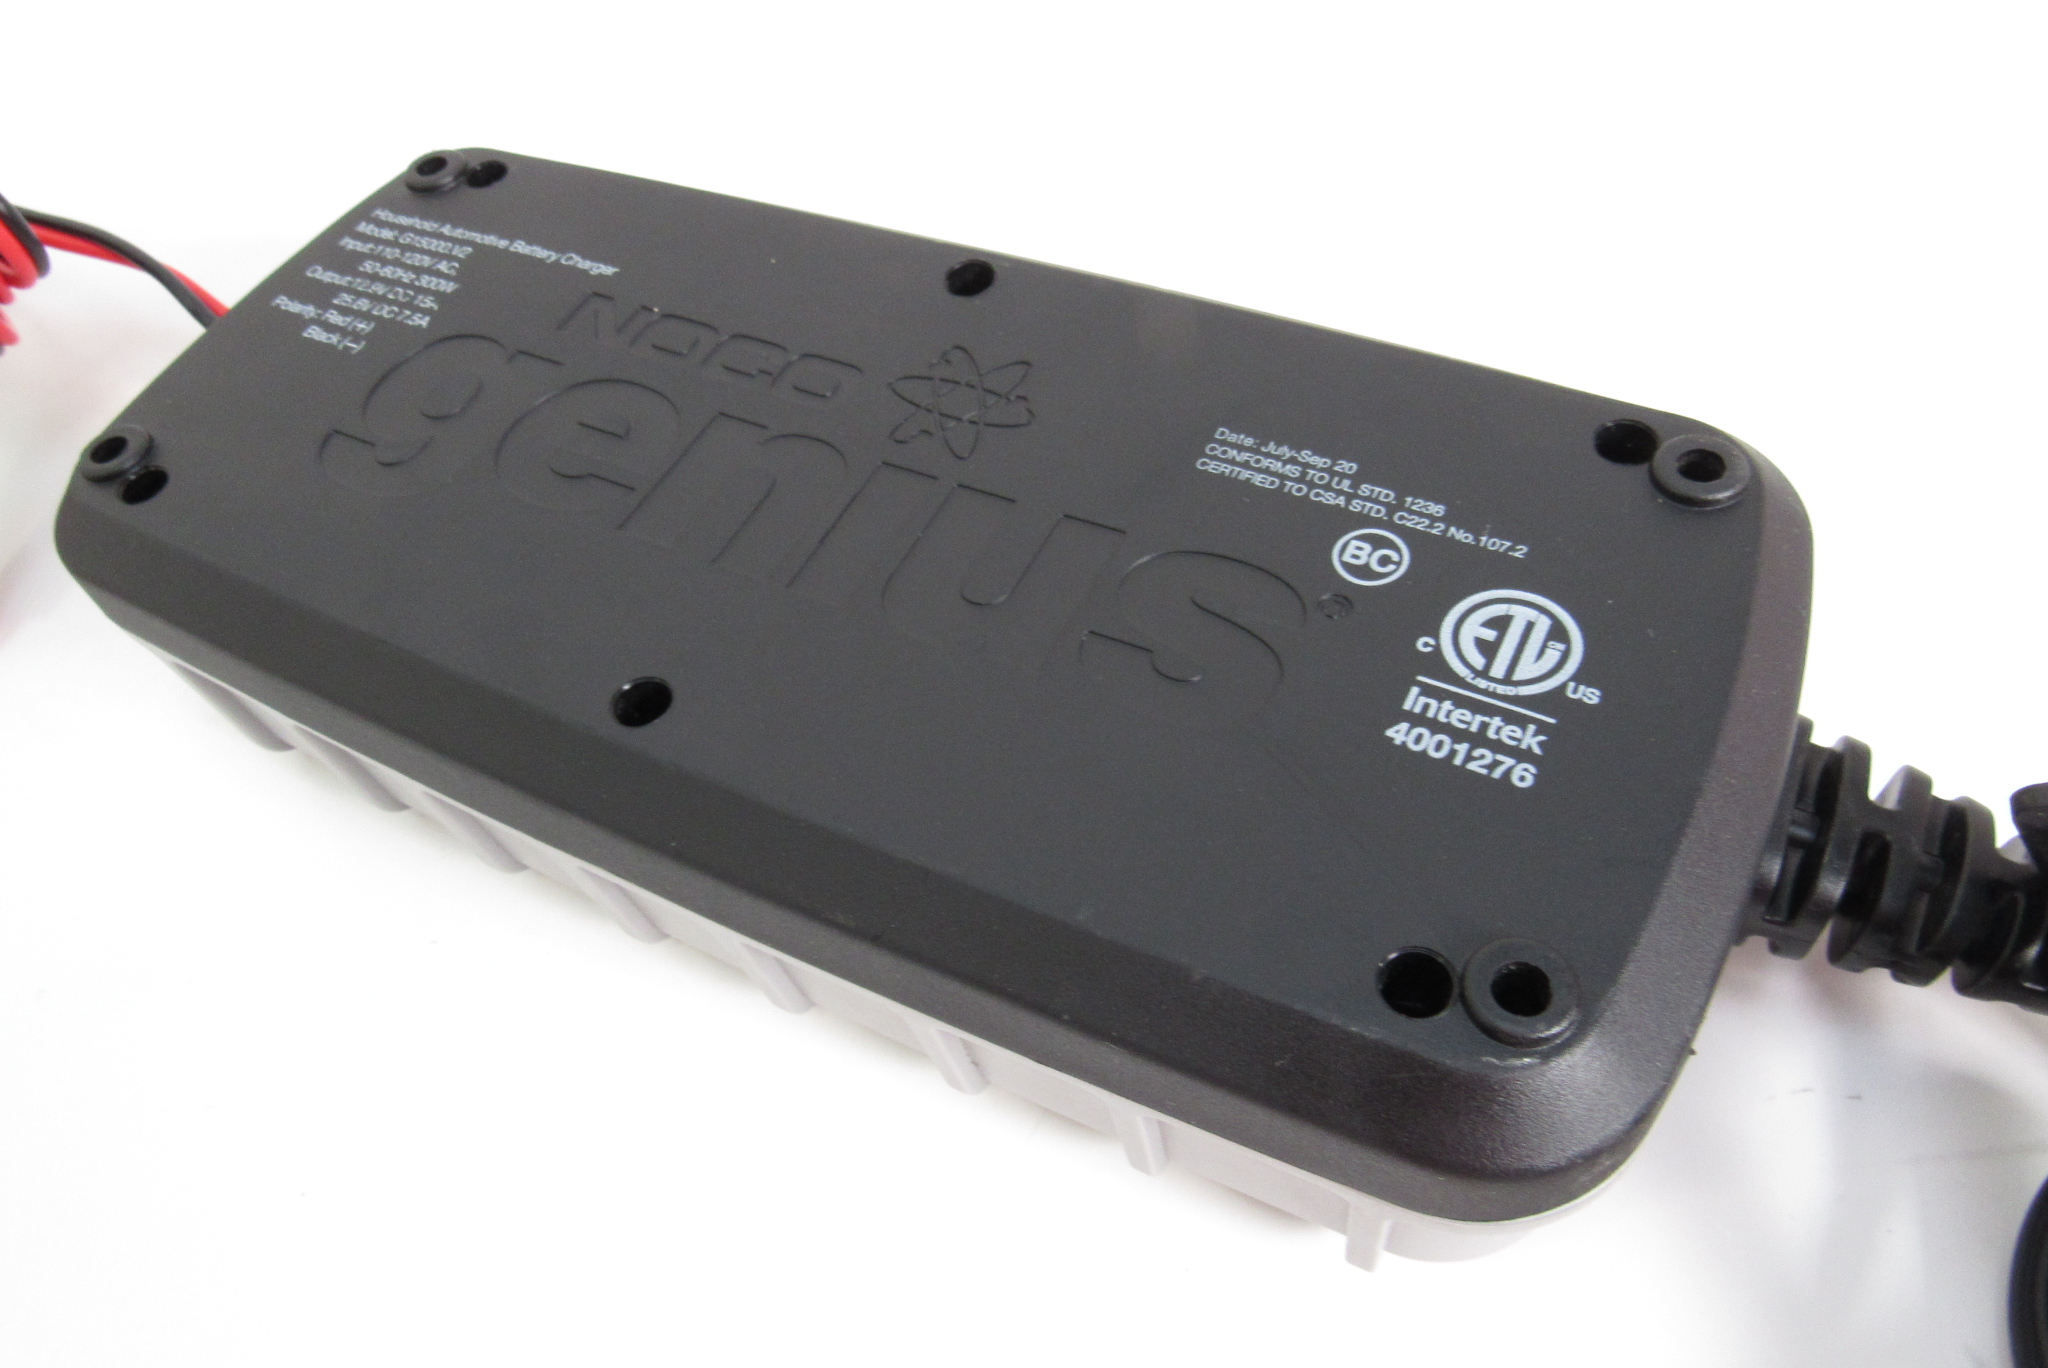 Spécialités Électriques - Noco genius G15000 15 amperes batterie chargeur